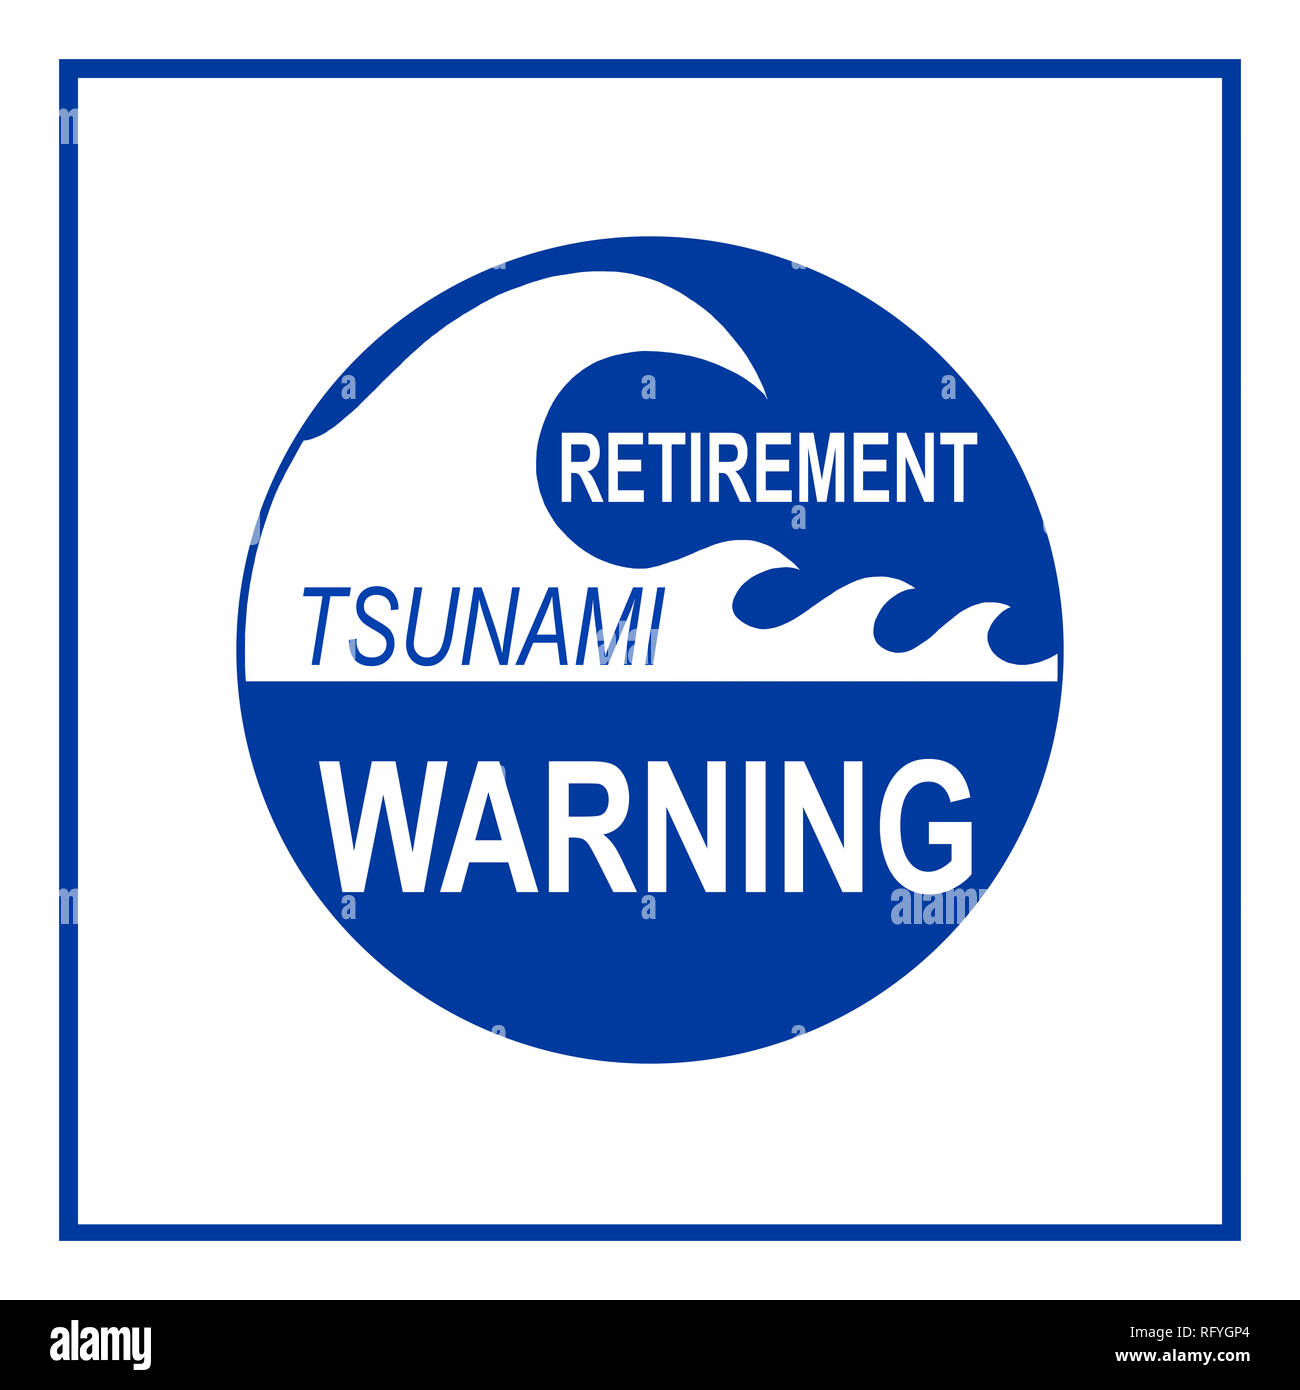 Retirment Tsunami Warning Zeichen auf weißem Hintergrund. Das Konzept basiert auf Baby boomers bald das Rentenalter erreichen und Mangel an eingehenden nicht Stockfoto